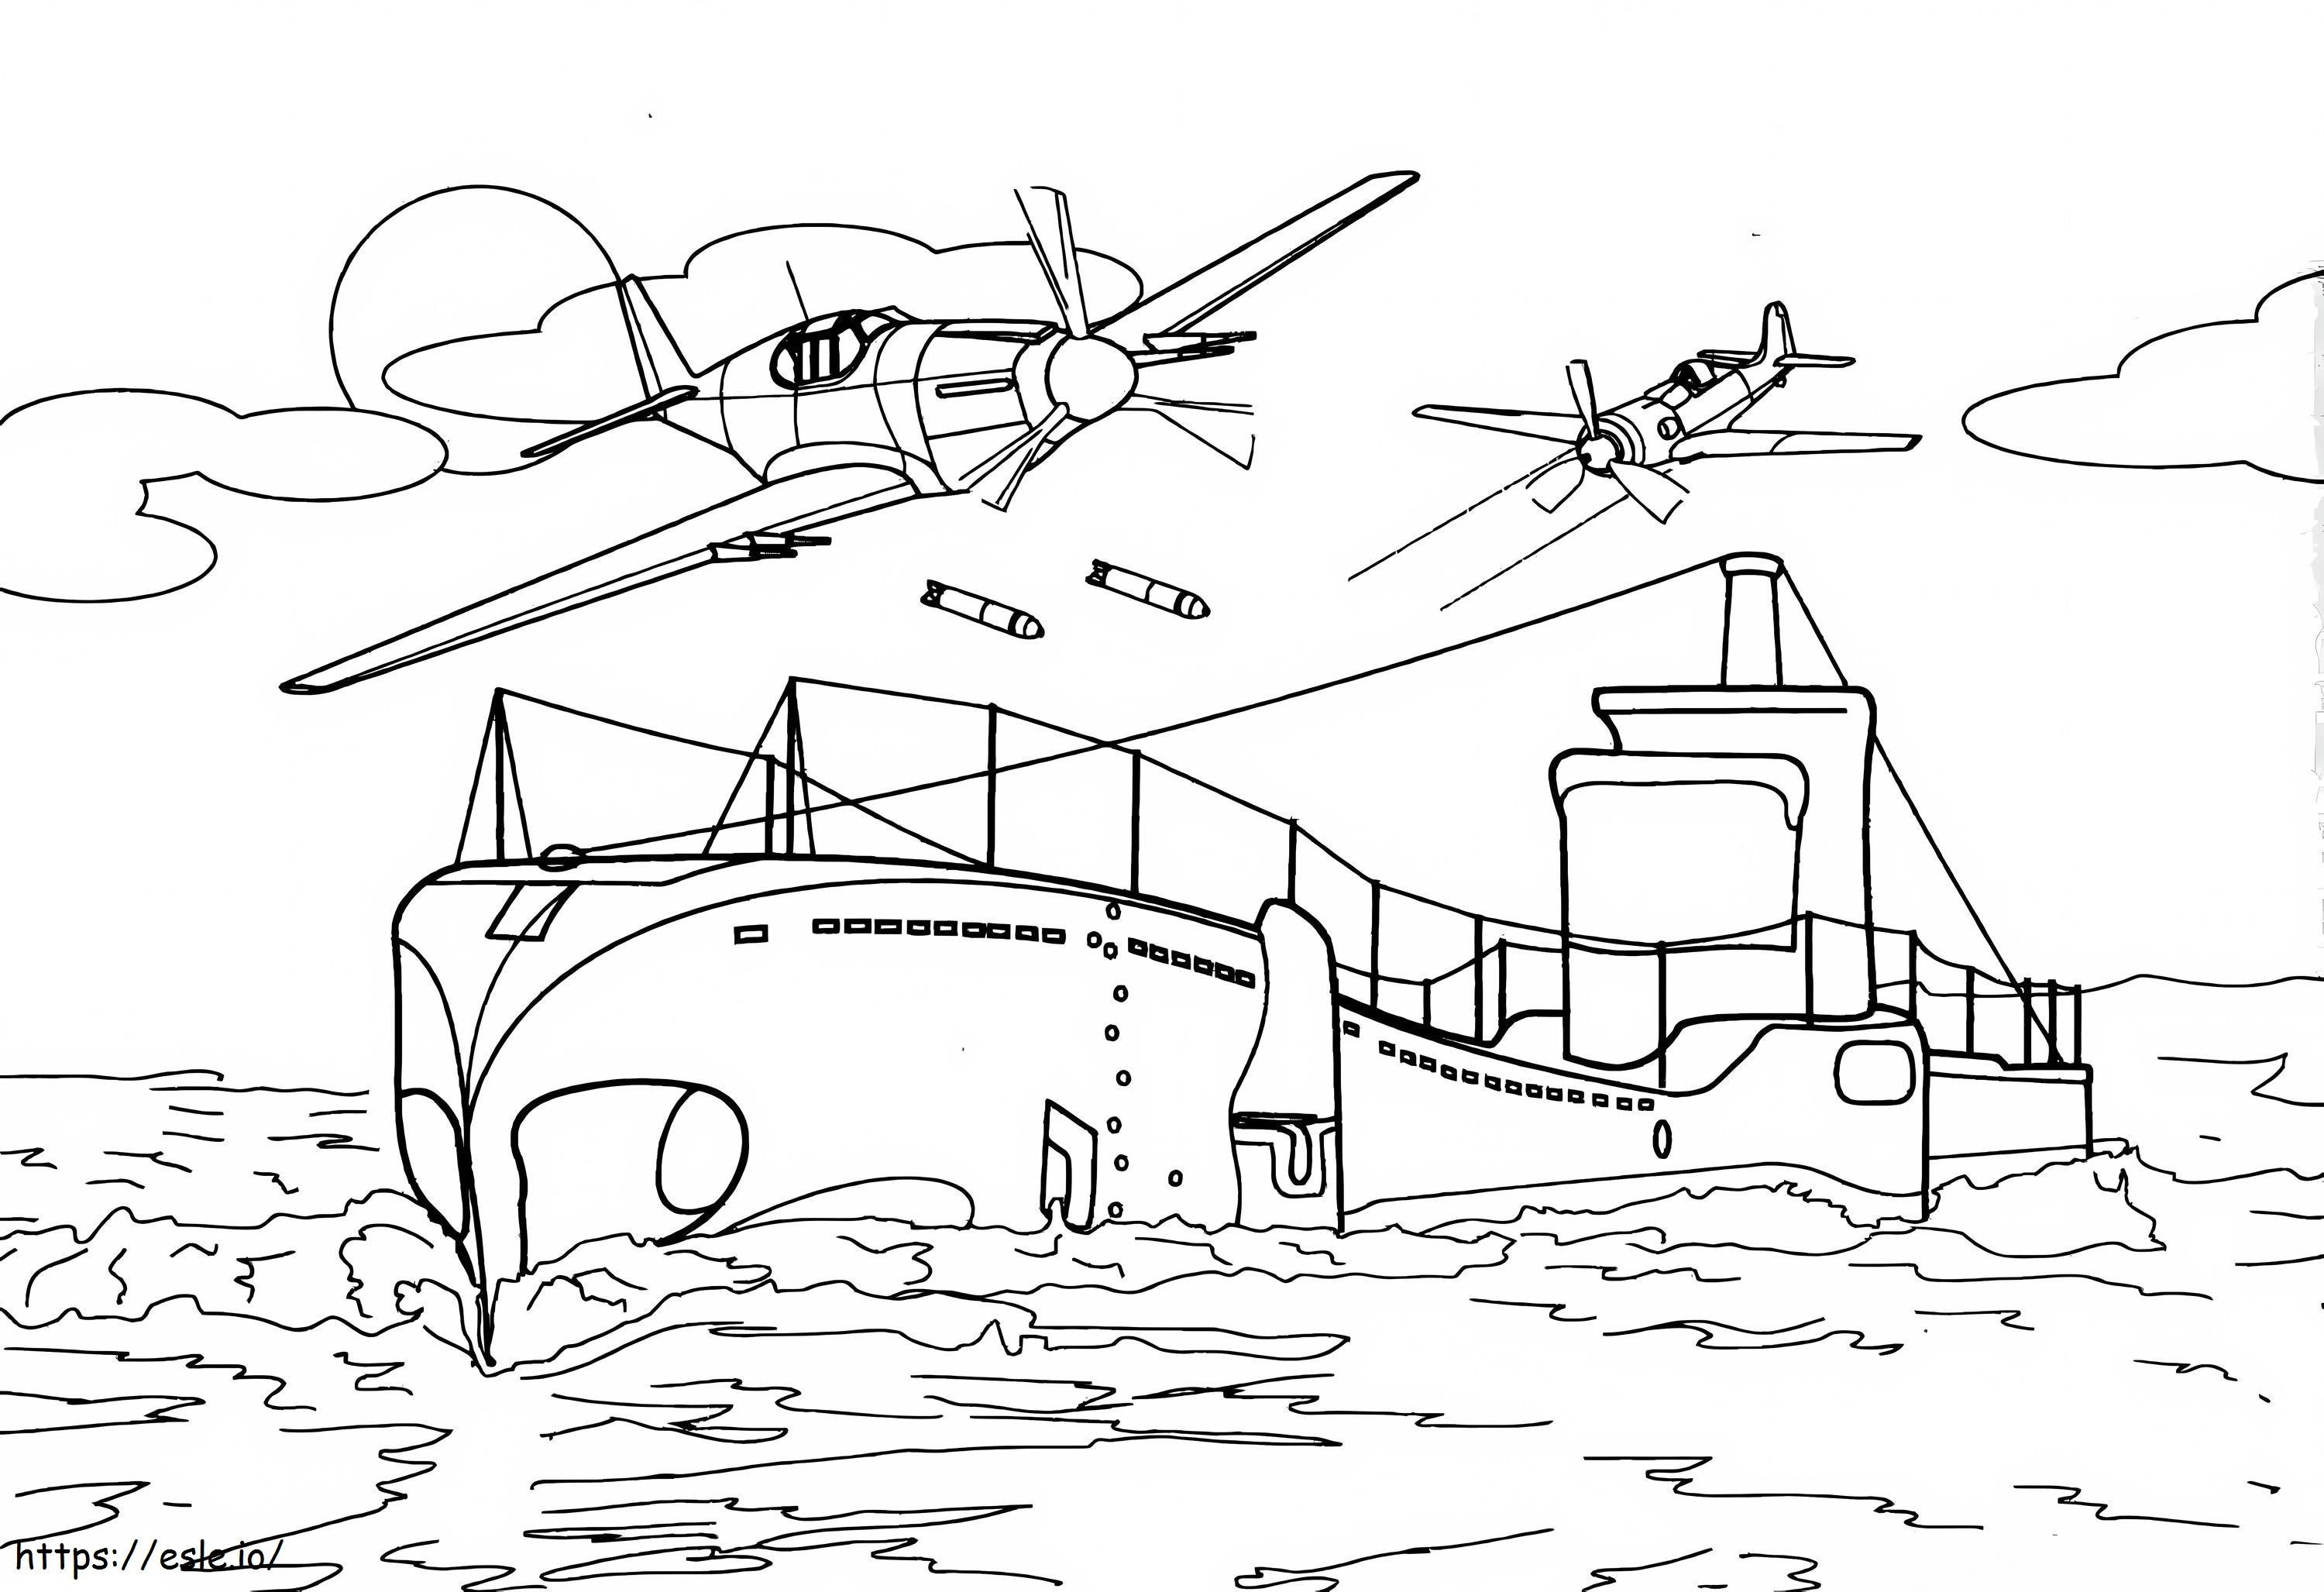 U-Boot und zwei Hubschrauber ausmalbilder